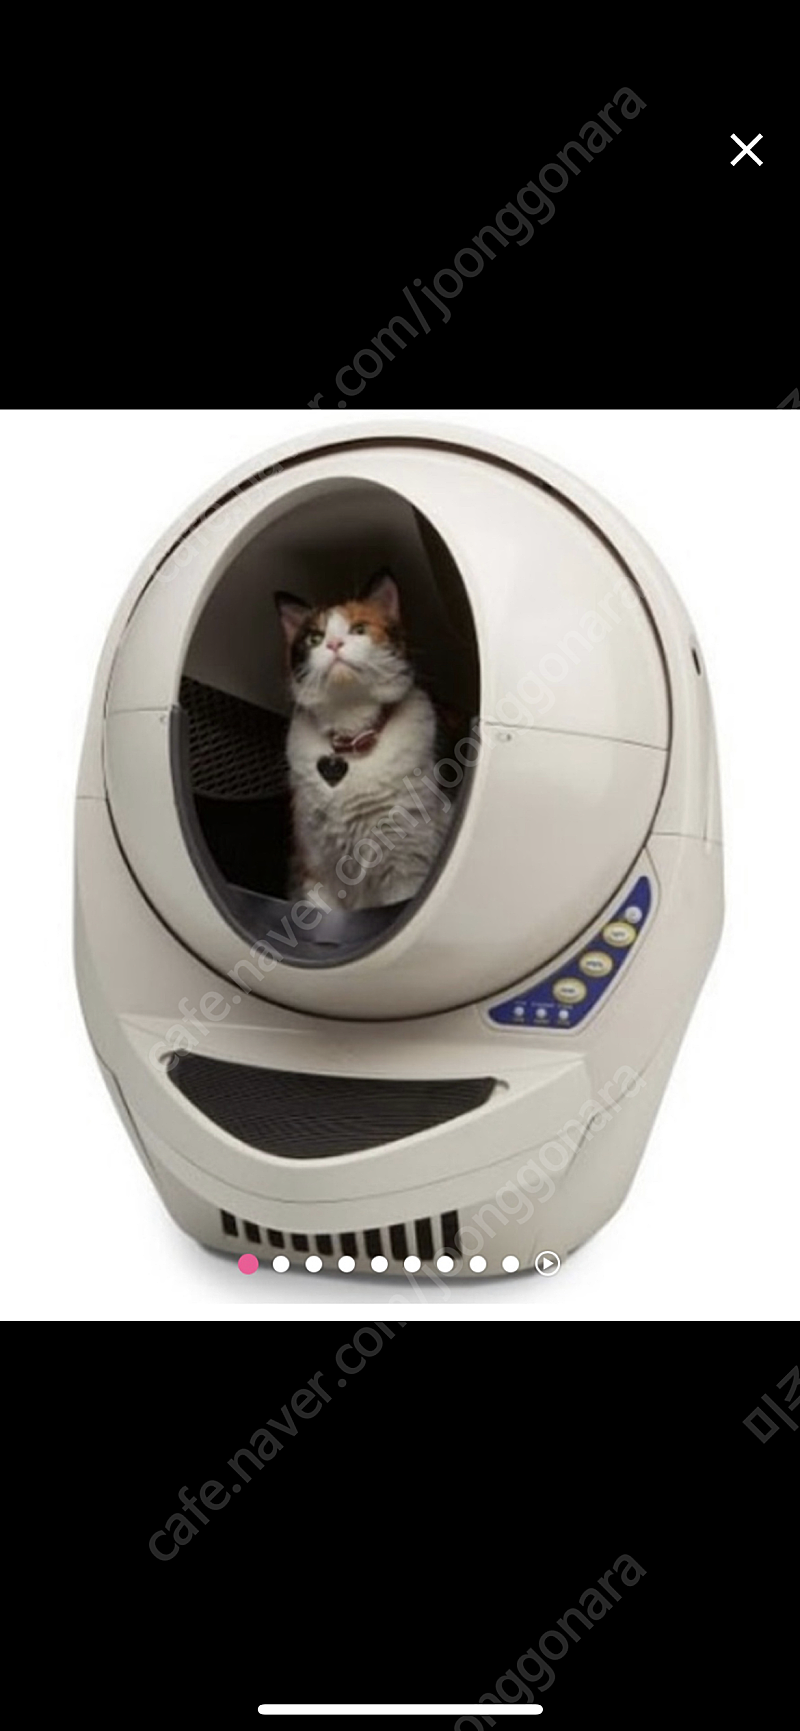 고양이 화장실 리터로봇3 오픈에어 판매합니다.